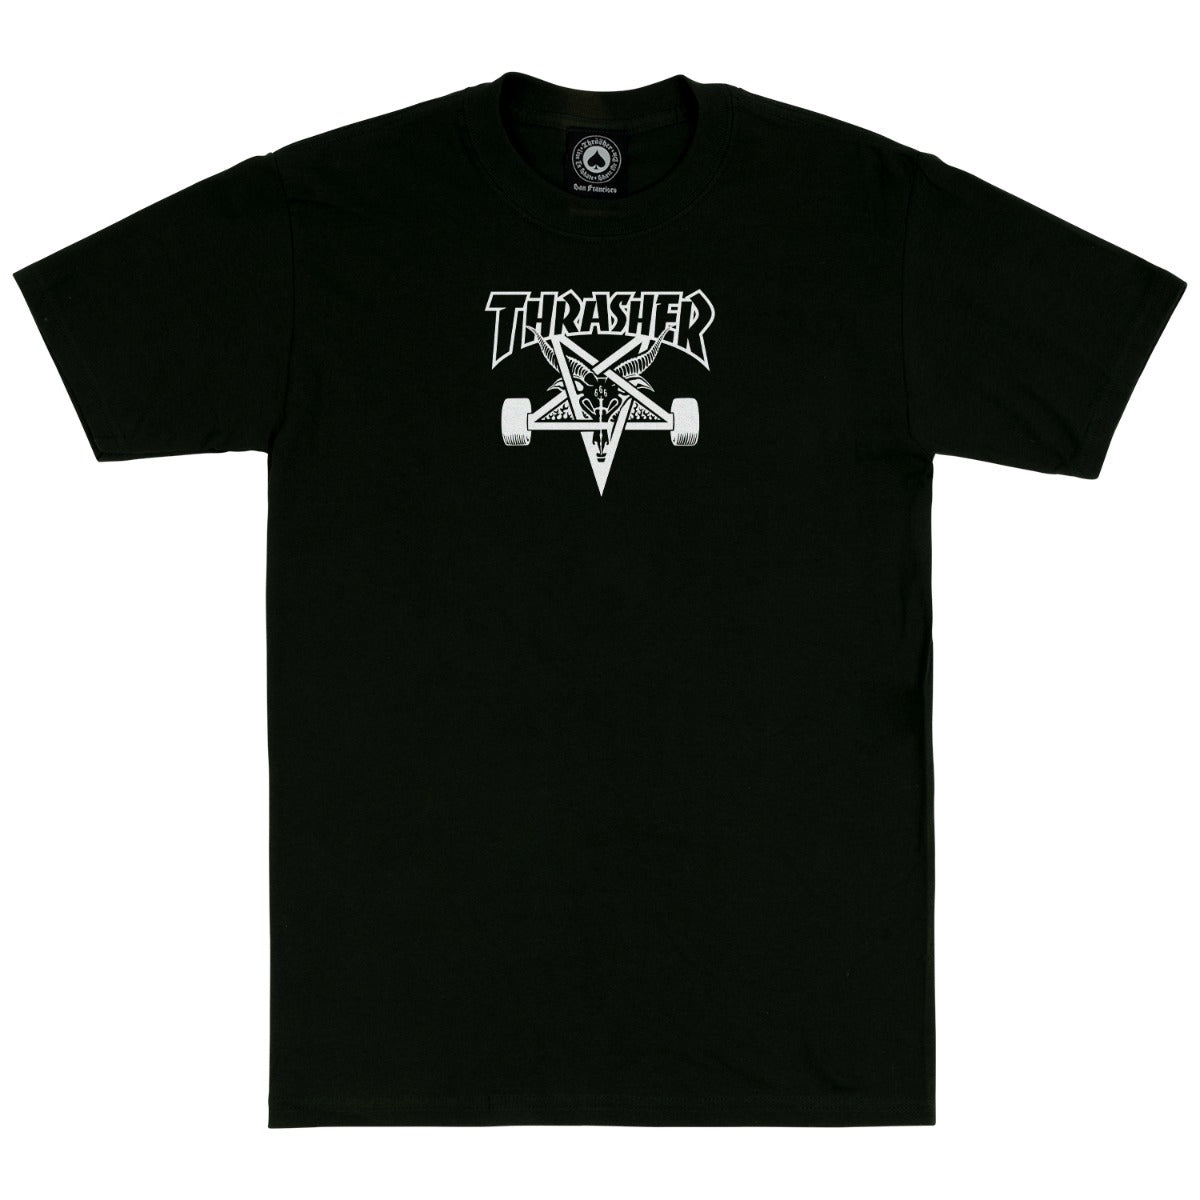 Thrasher Skate Goat T-shirt Black